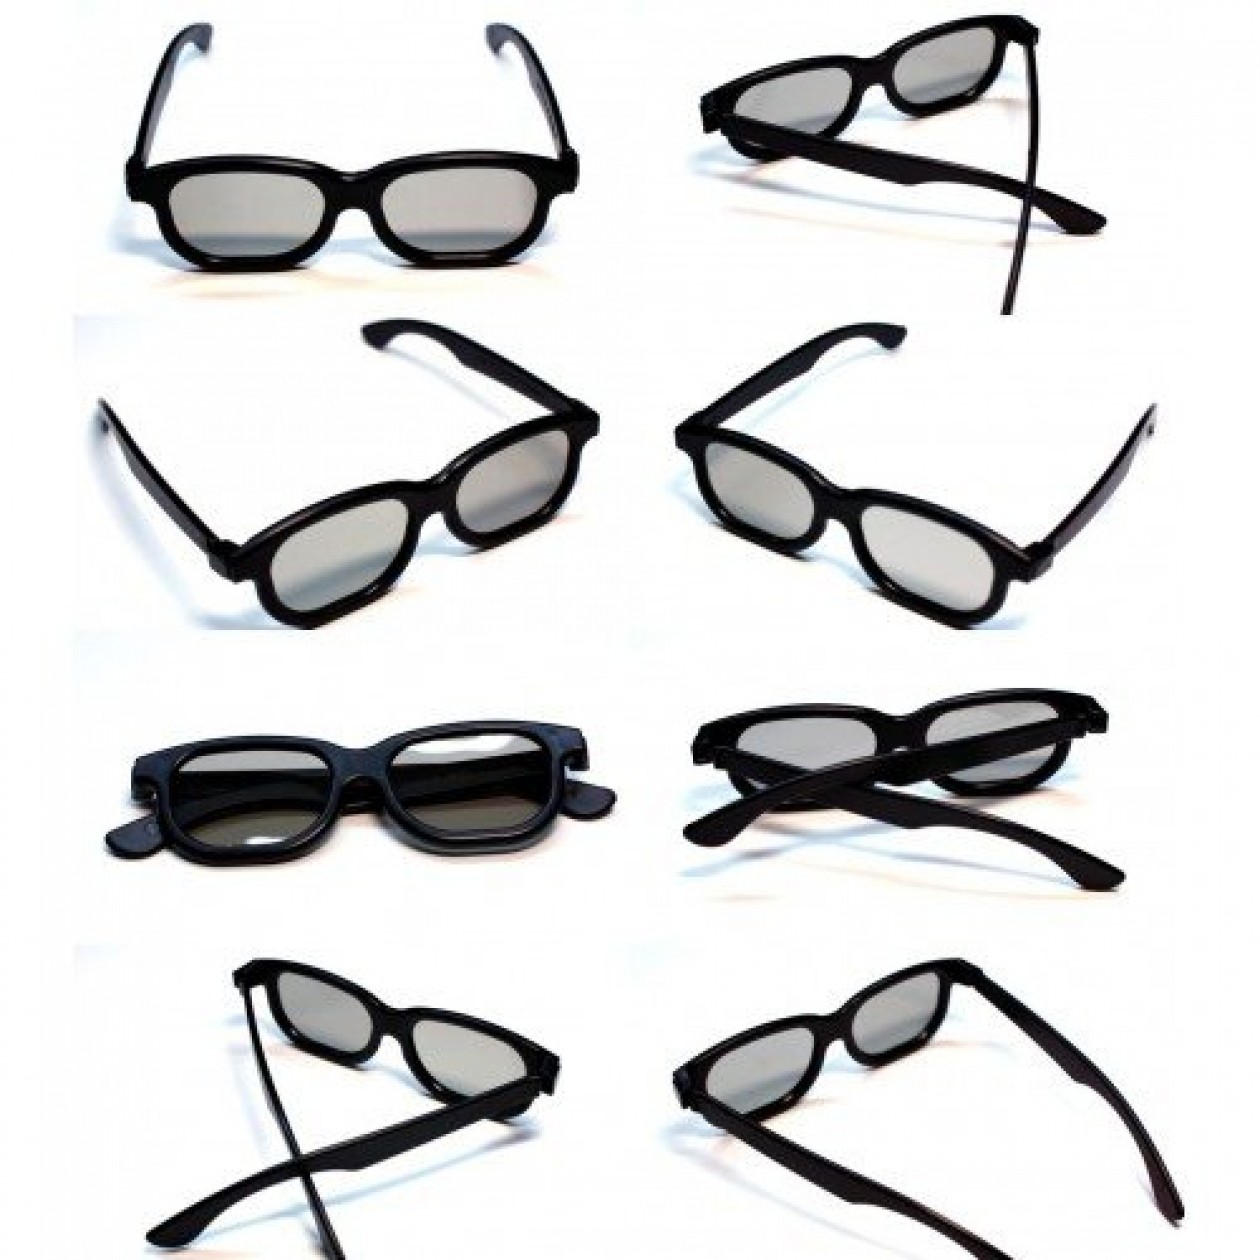 Rheme 10 x Newest Latest 3D Glasses